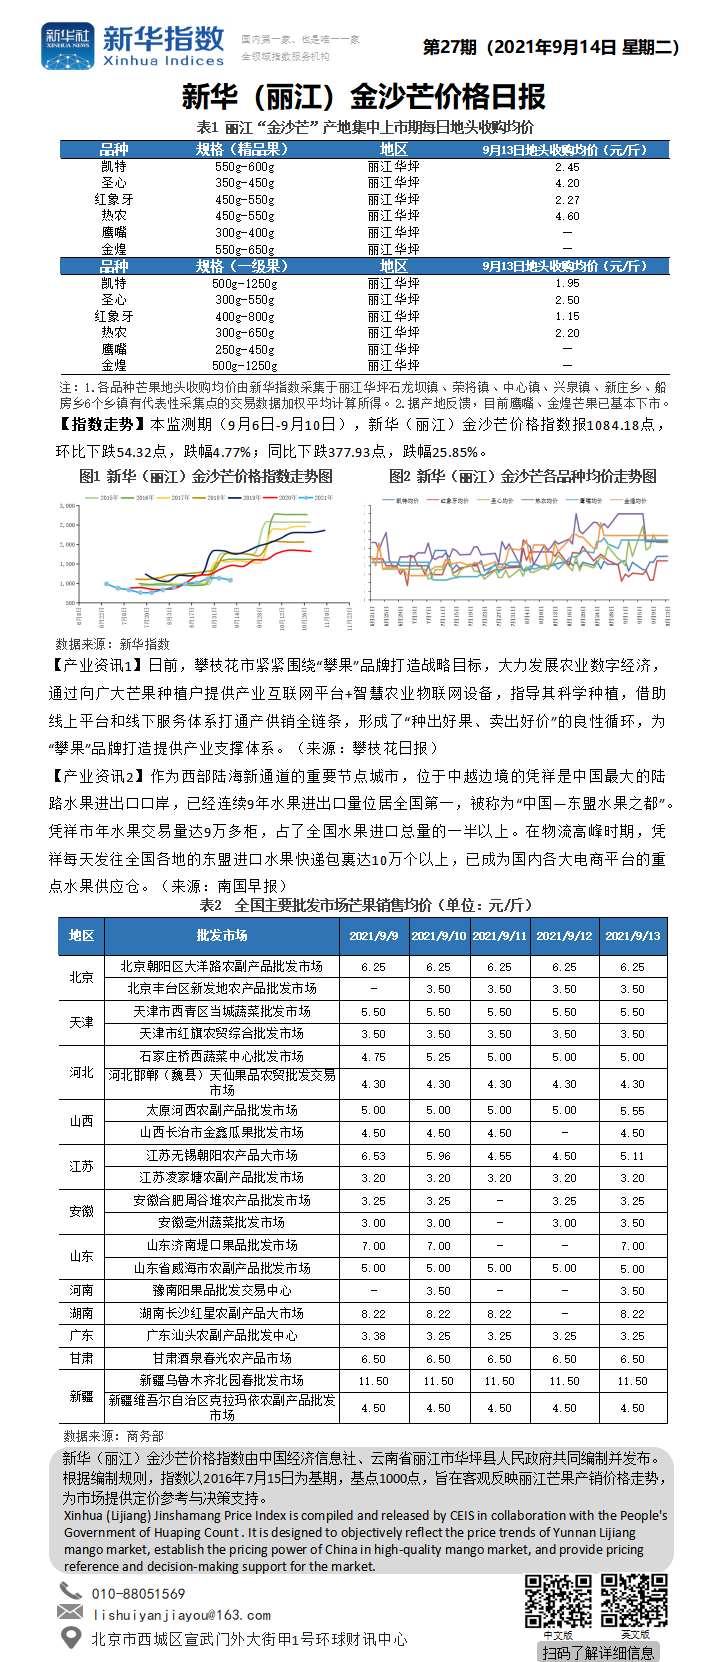 新华（丽江）金沙芒价格日报 （20210914）.png